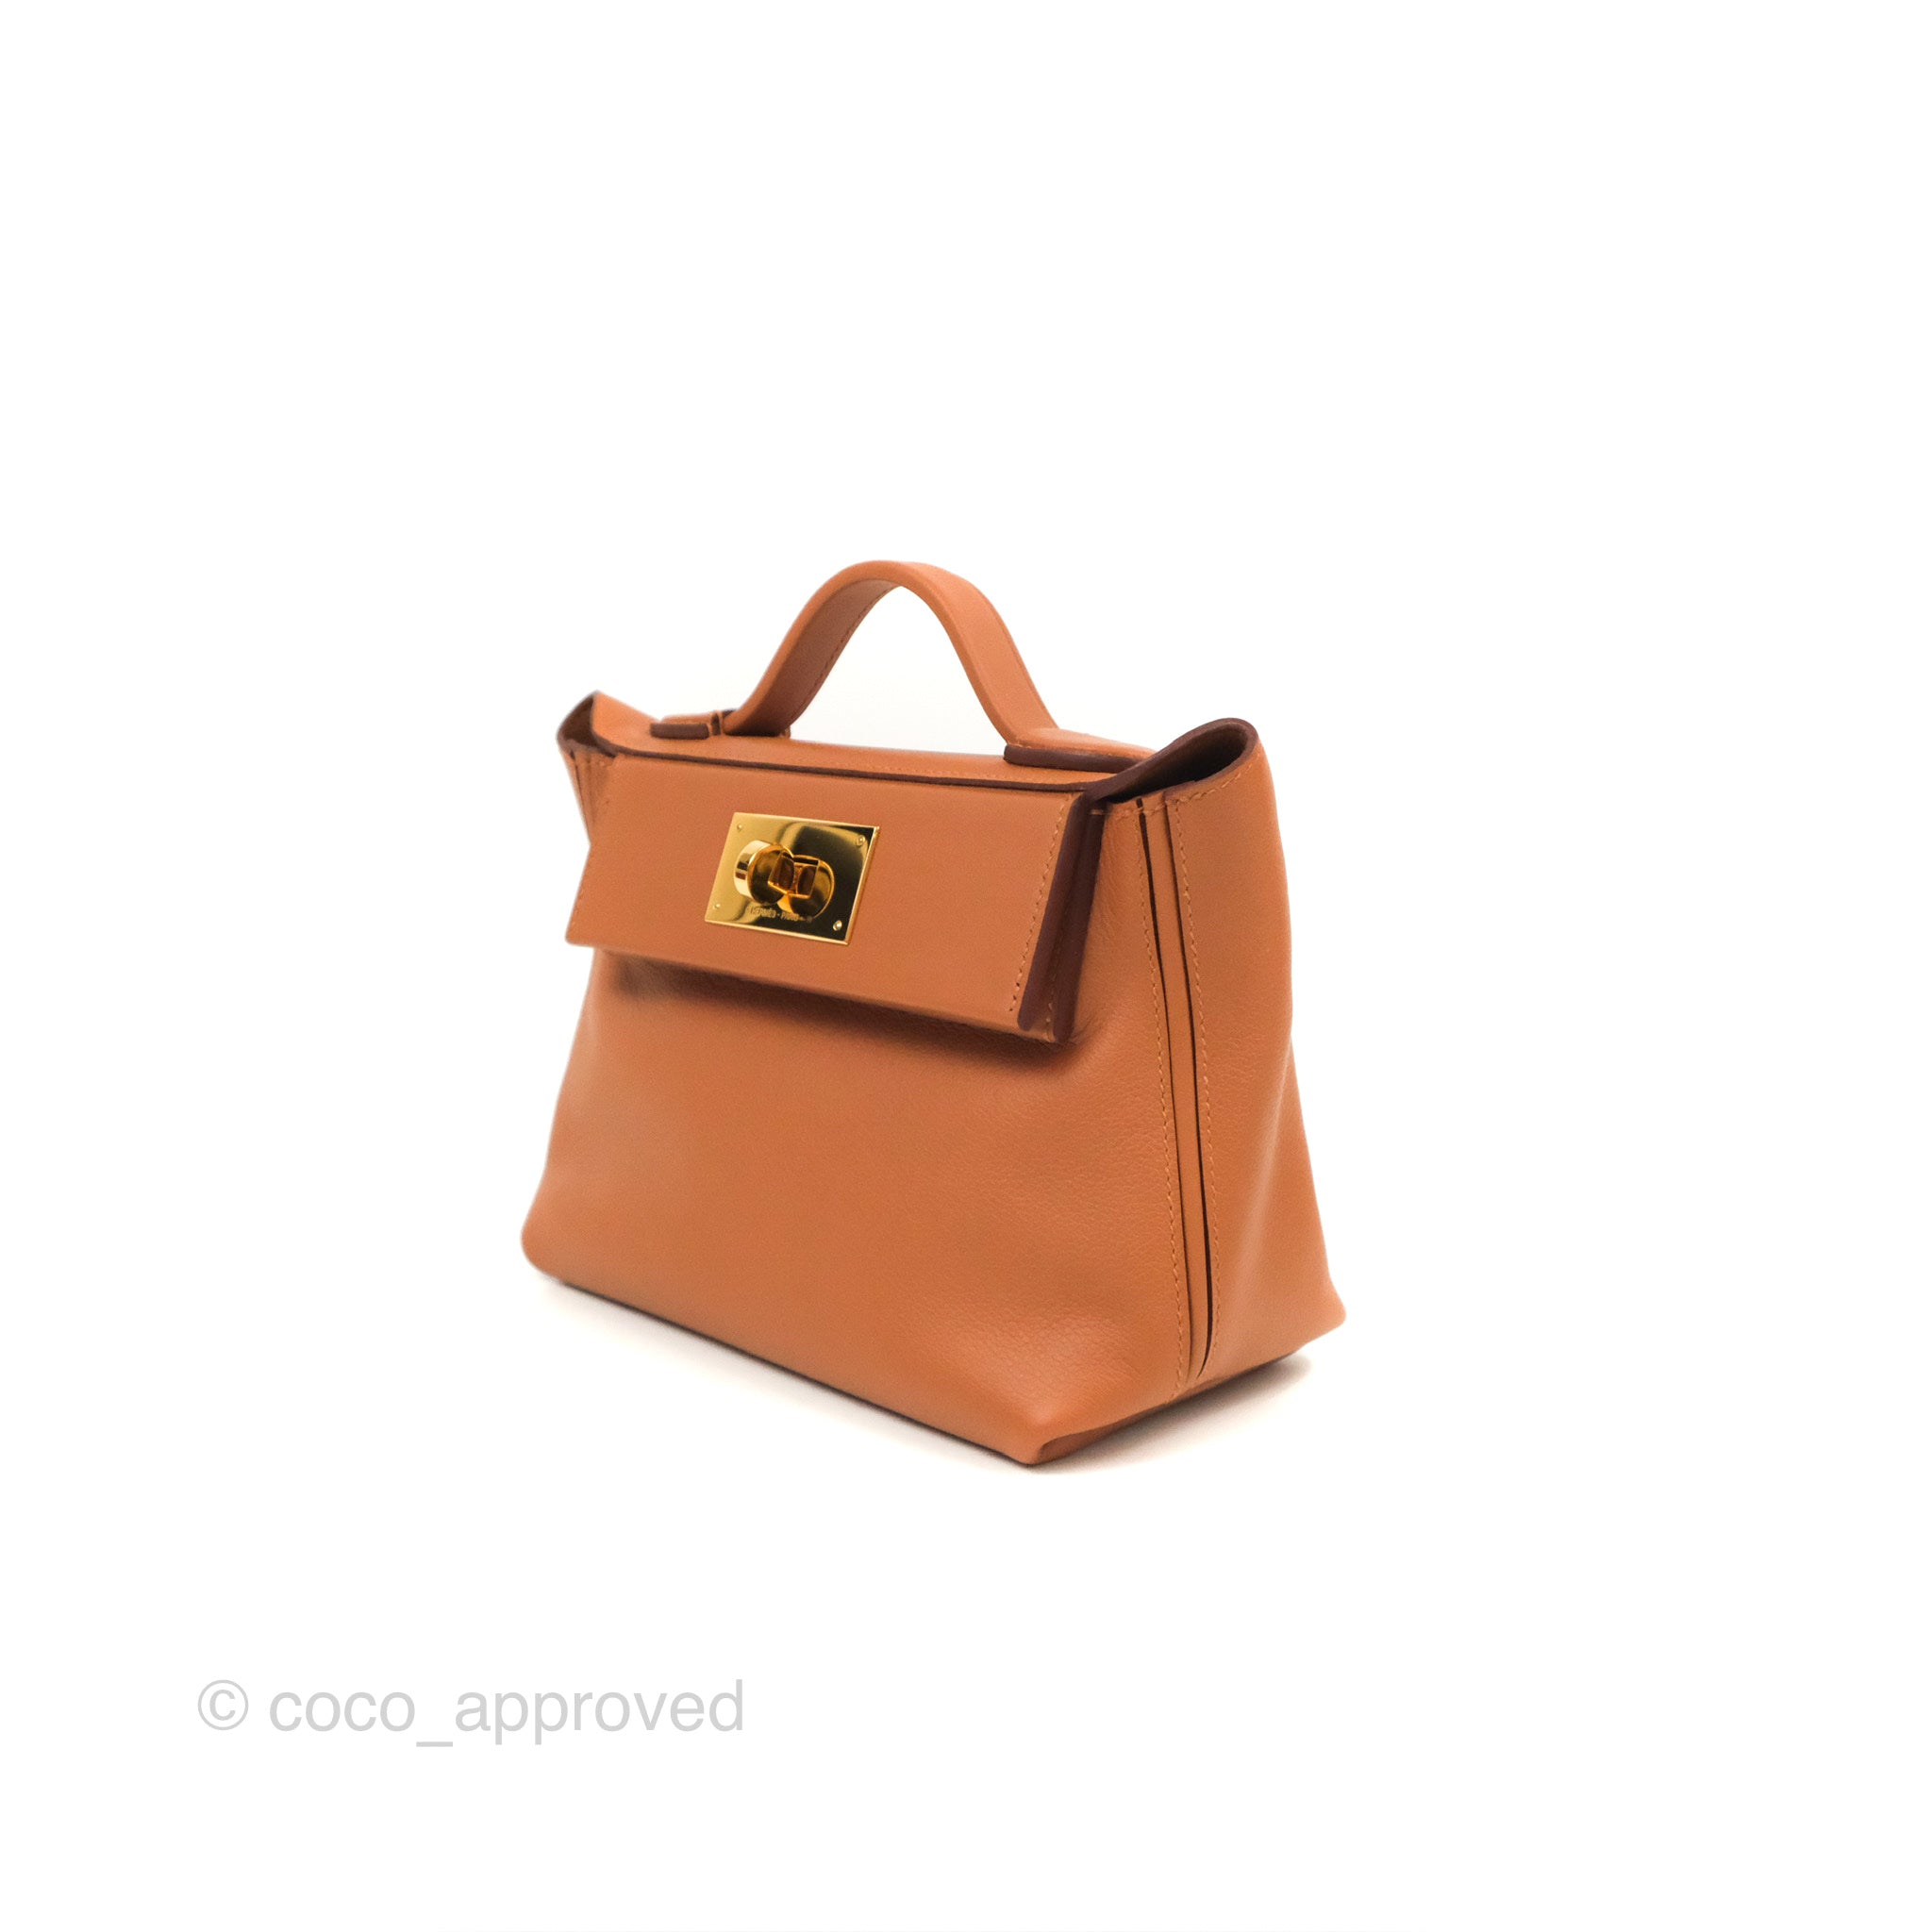 Hermès 24/24 21 Mini Gold Evercolor Gold Hardware – Coco Approved Studio